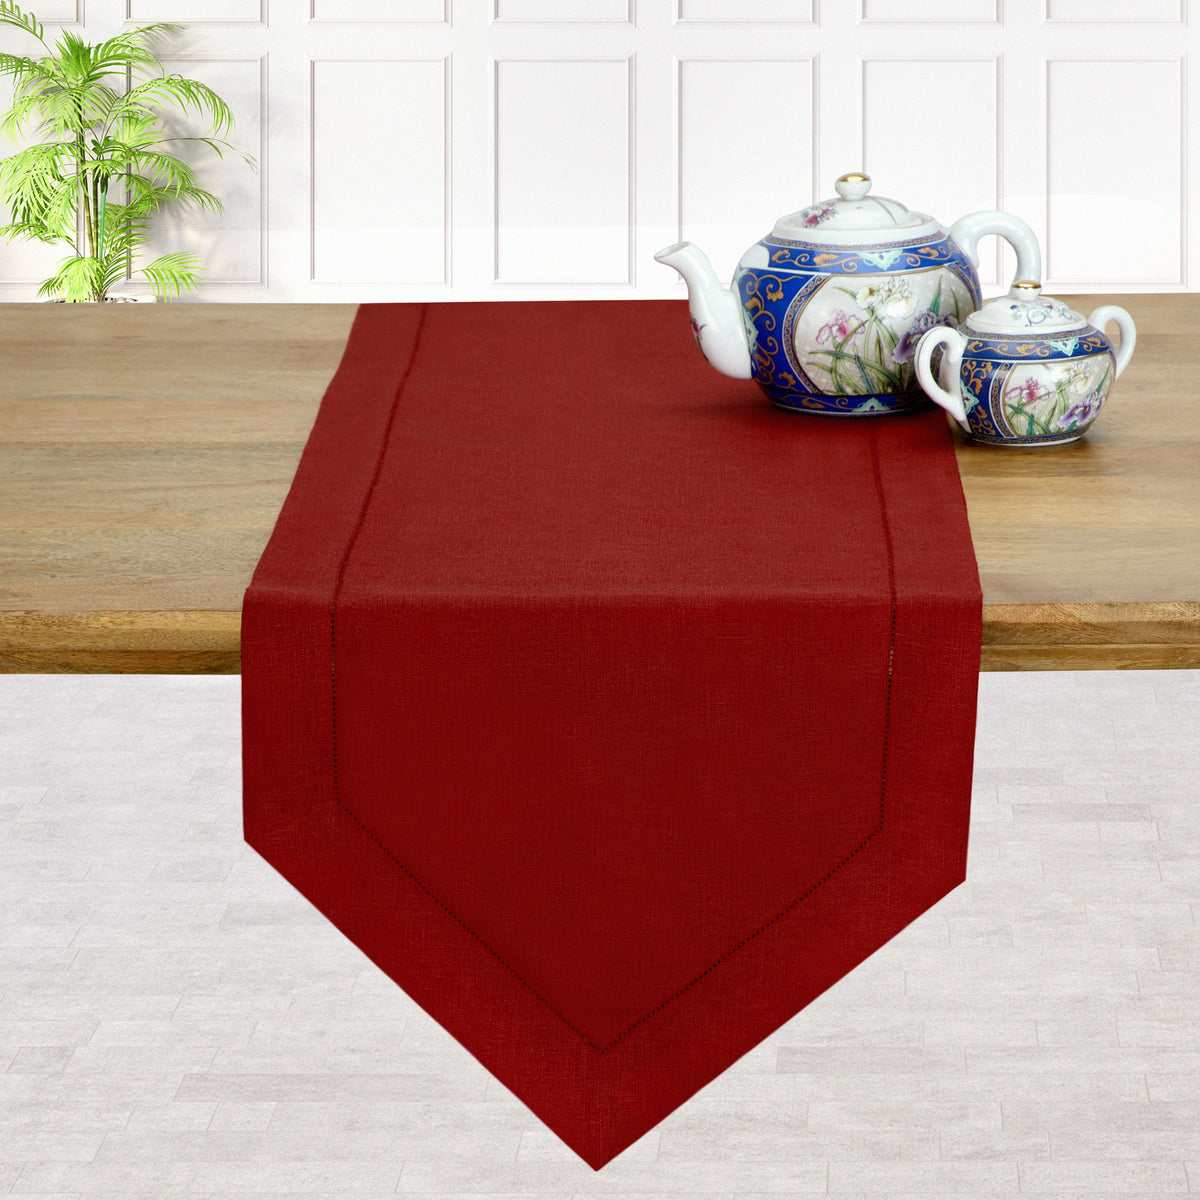 Red Linen Table Runner - Diamond